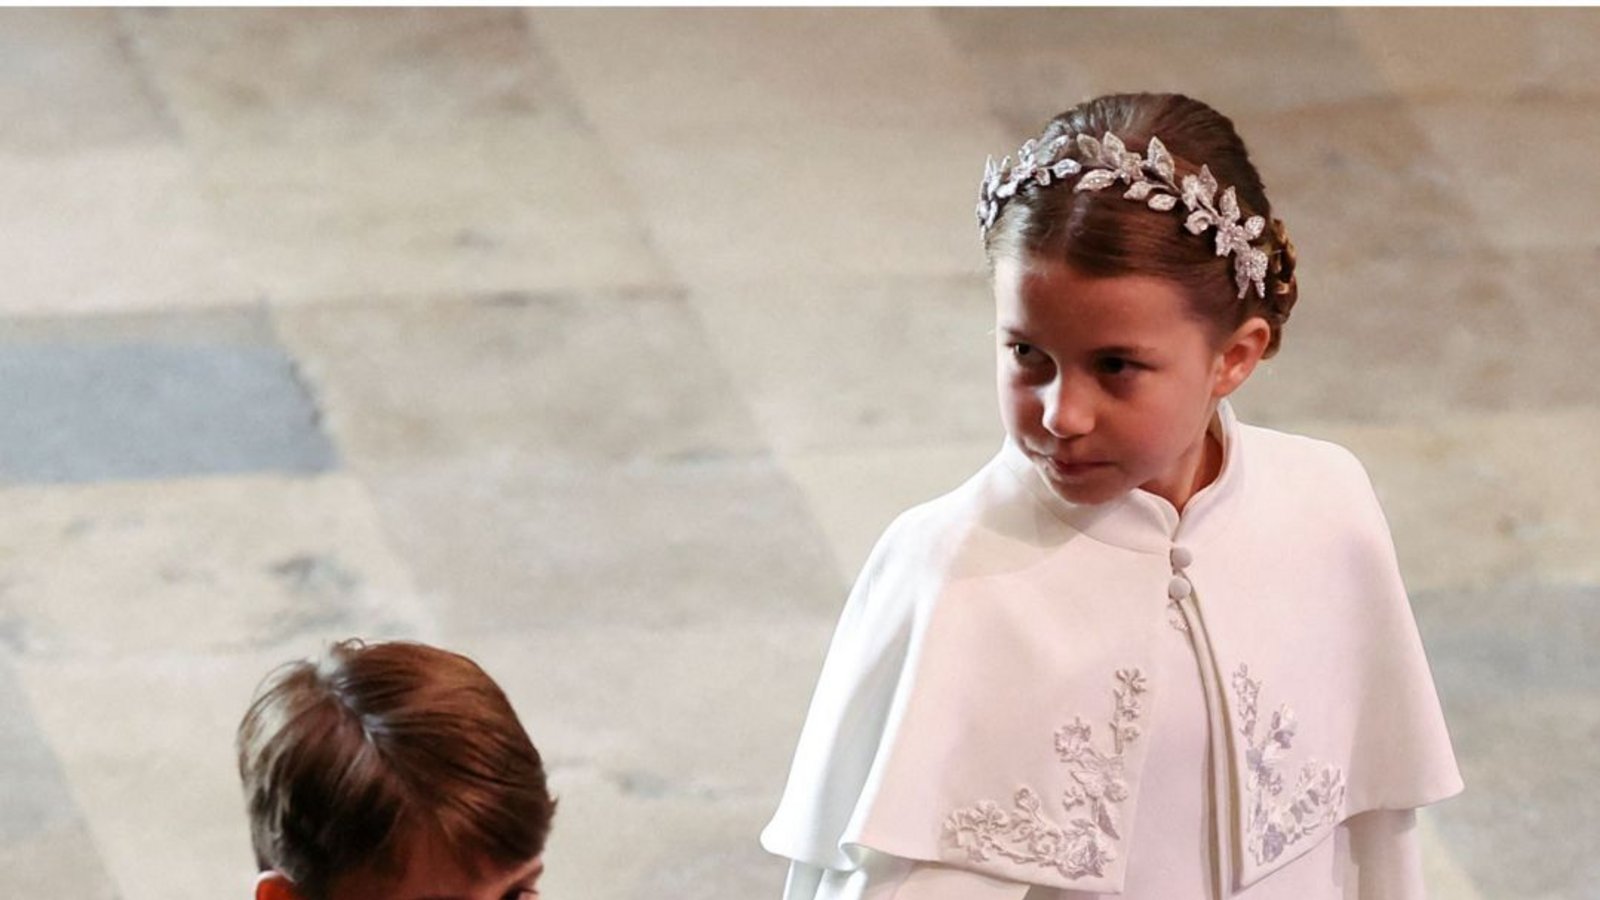 Bei der Krönung ihres Großvaters König Charles III. kümmerte sich Charlotte um ihren kleinen Bruder Louis.Foto: AFP/PHIL NOBLE